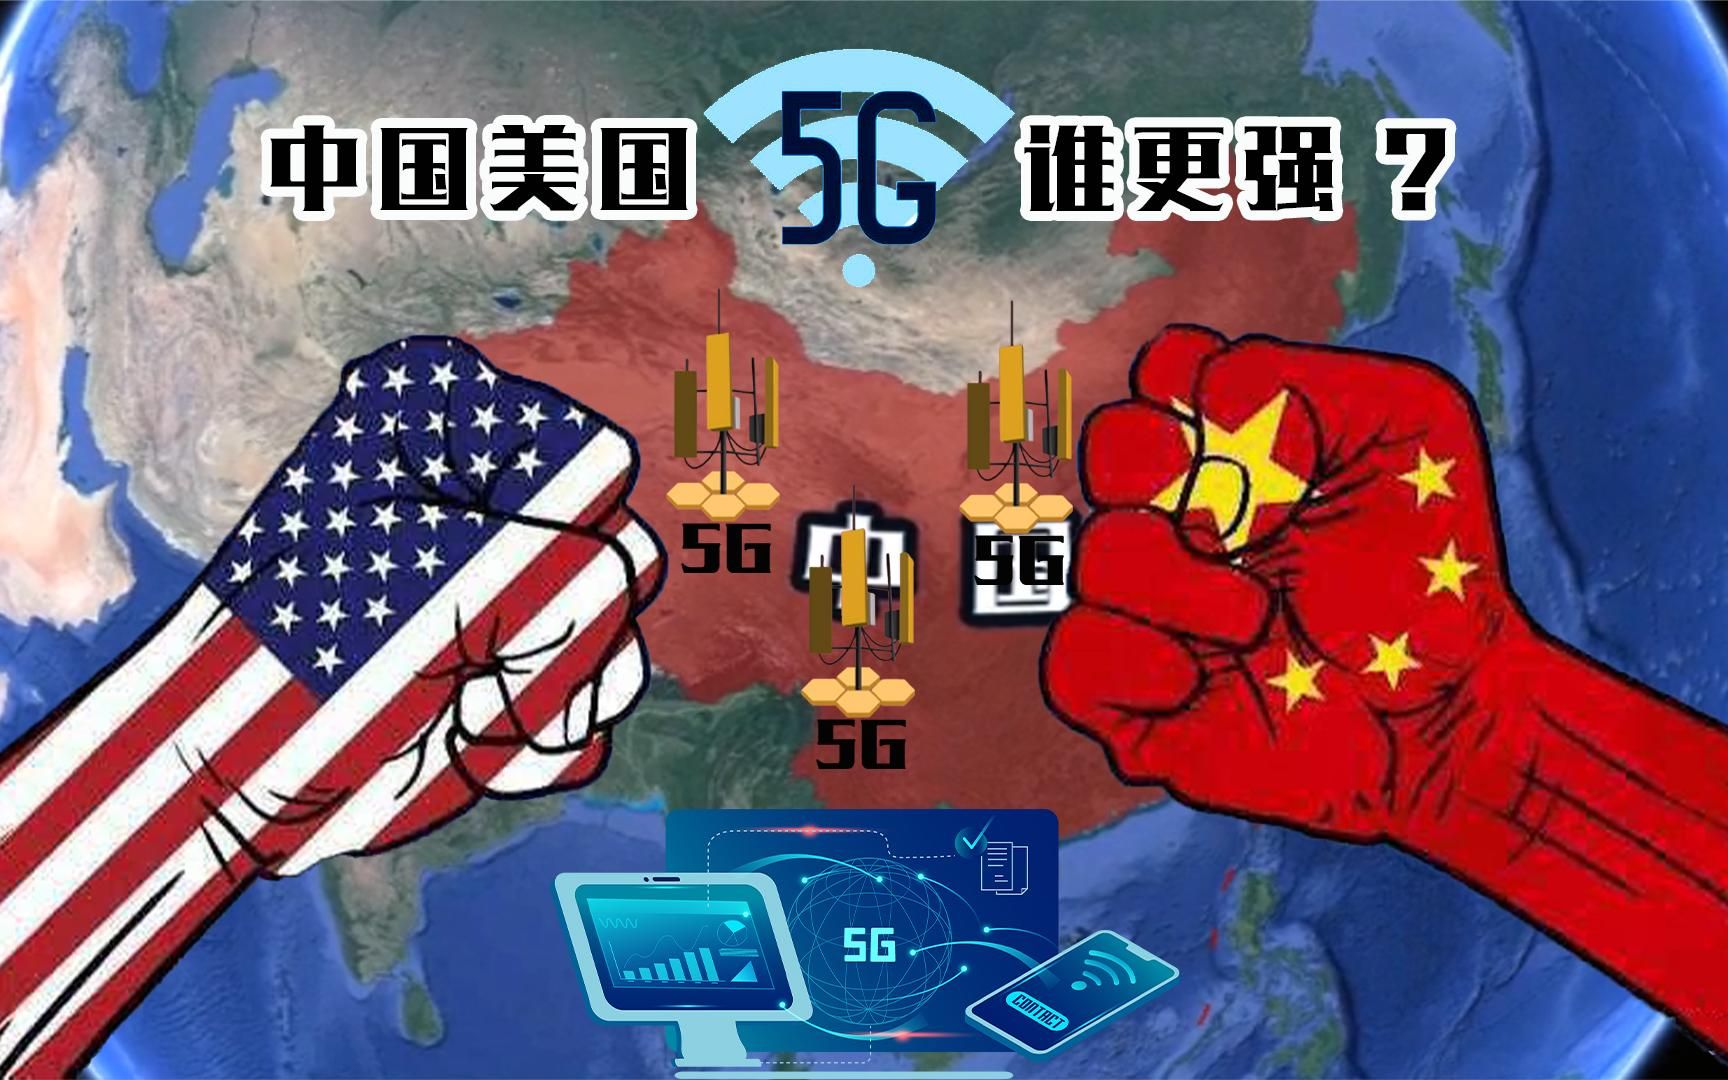 为何美国害怕中国5G技术？这是技术压制的威胁，我们放弃会全盘皆输